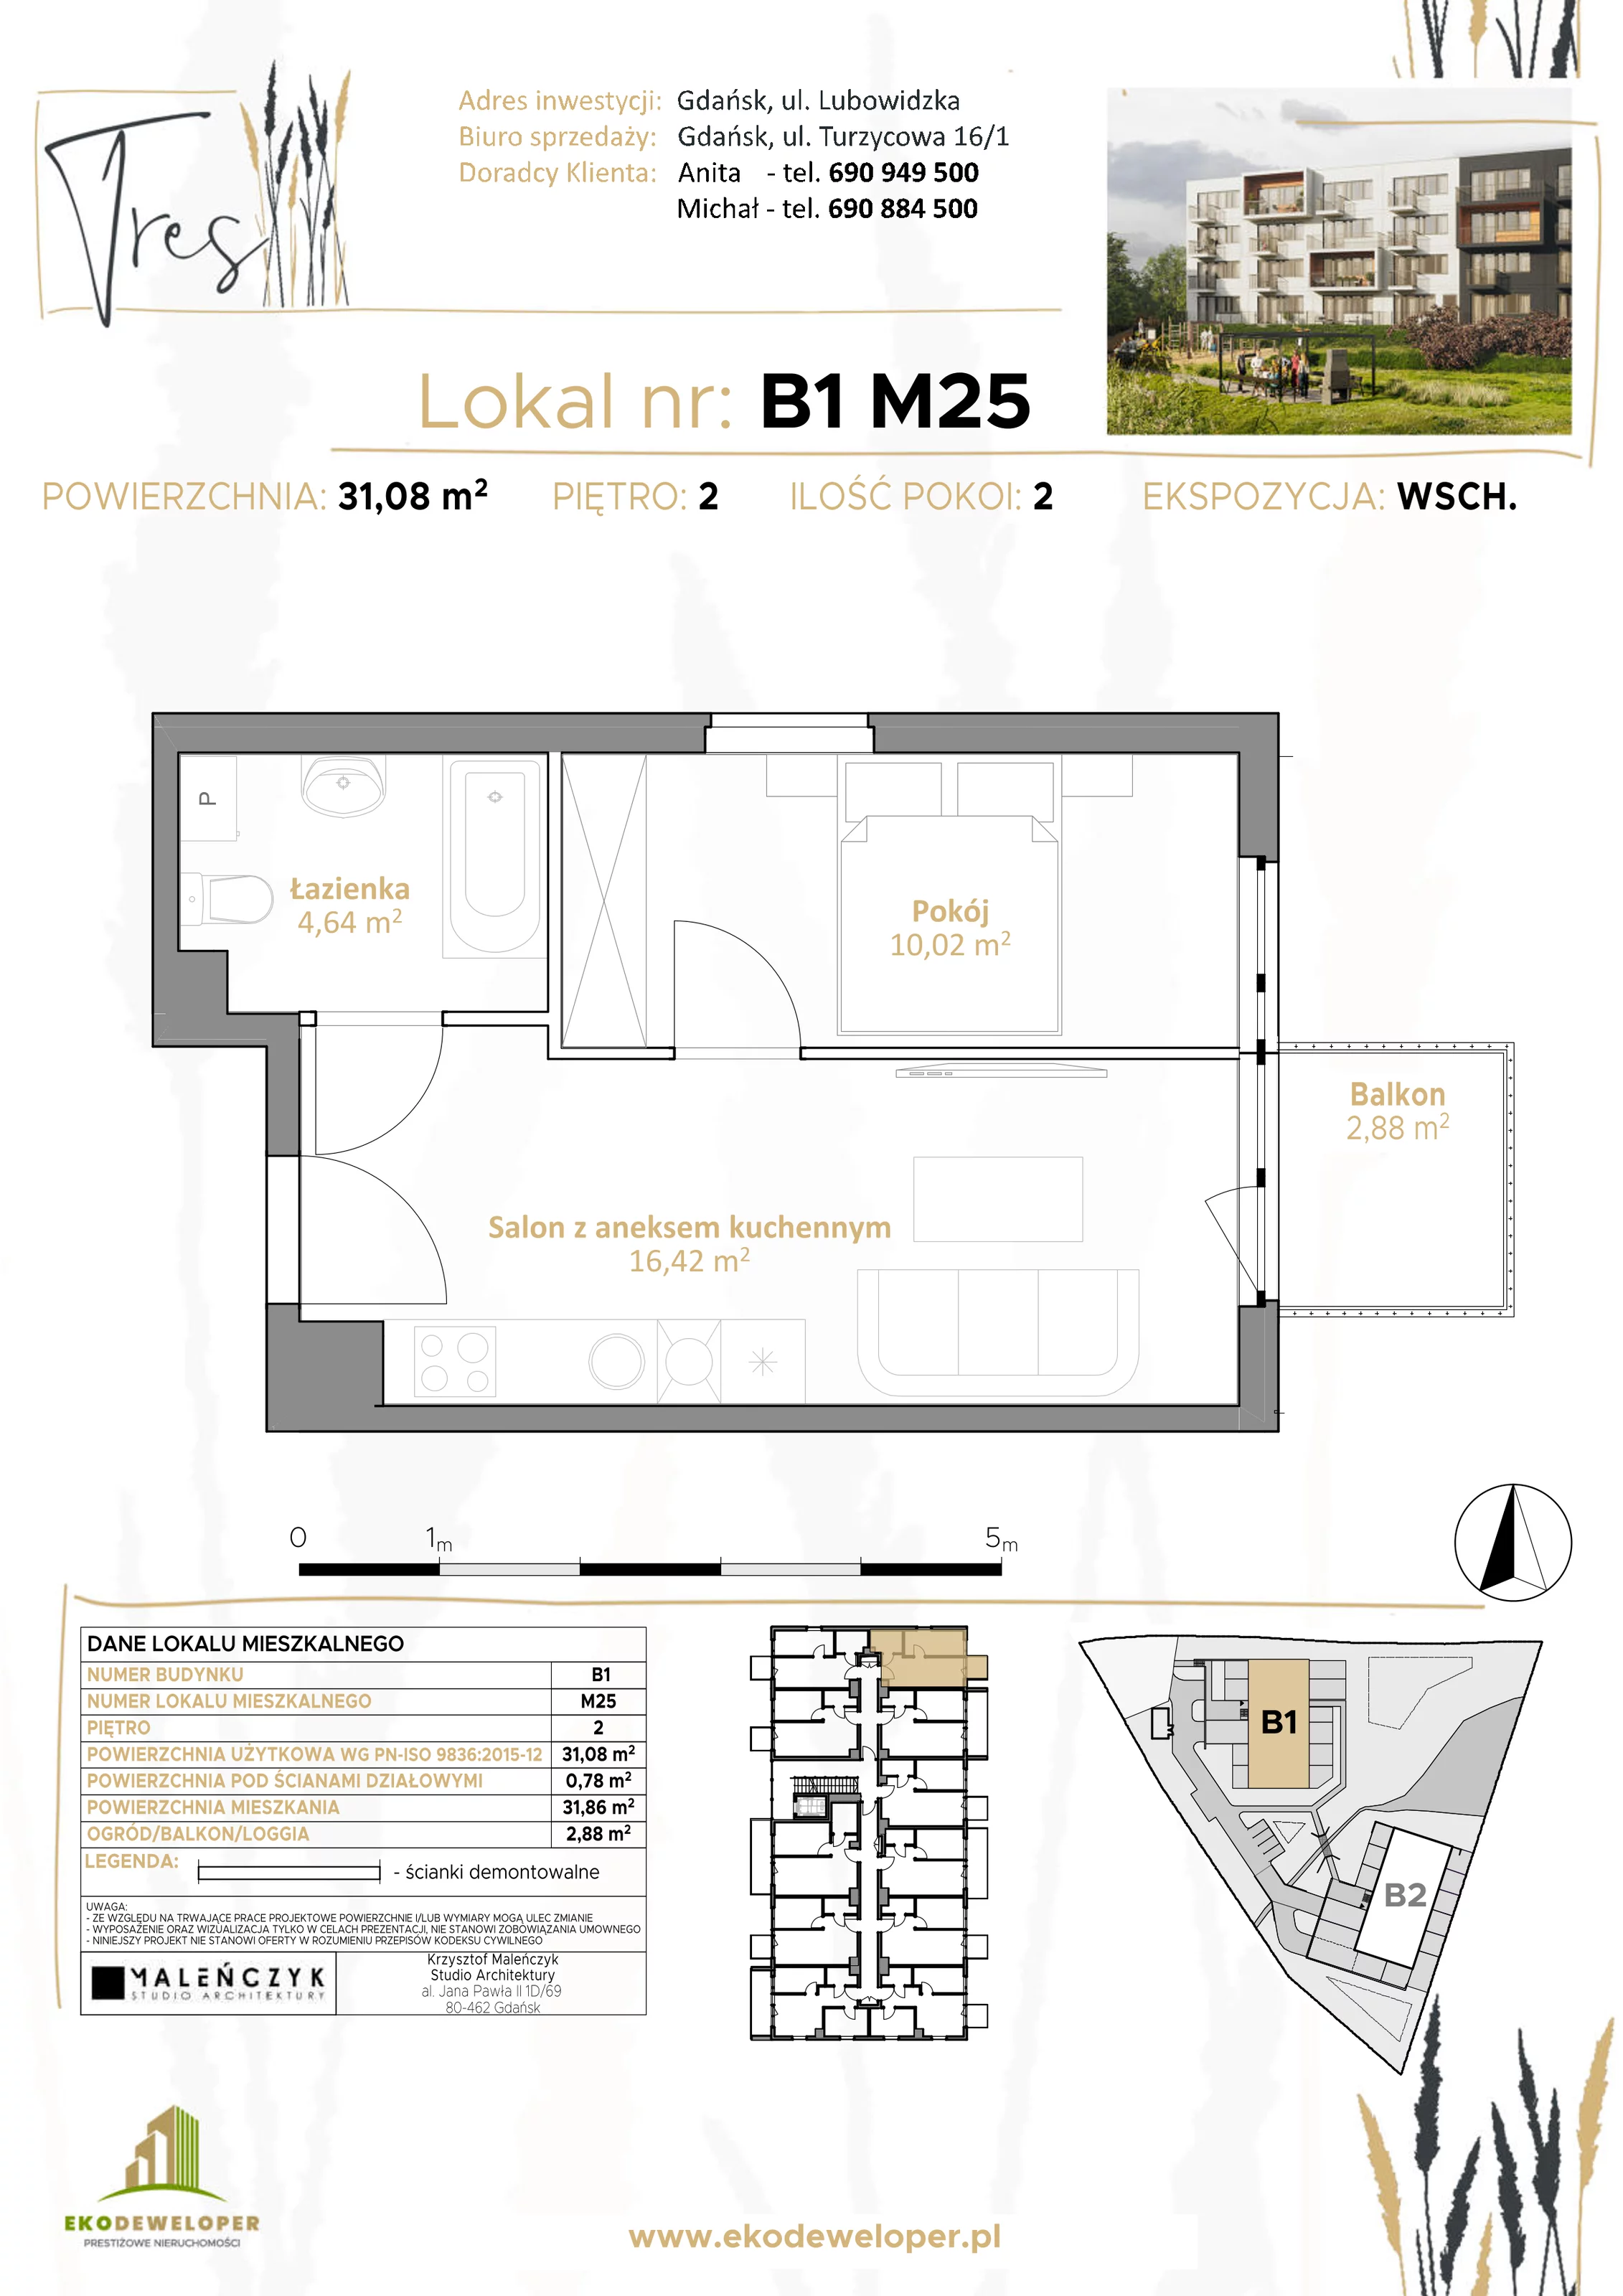 Mieszkanie 31,08 m², piętro 2, oferta nr B1.M25, Tres, Gdańsk, Jasień, ul. Lubowidzka